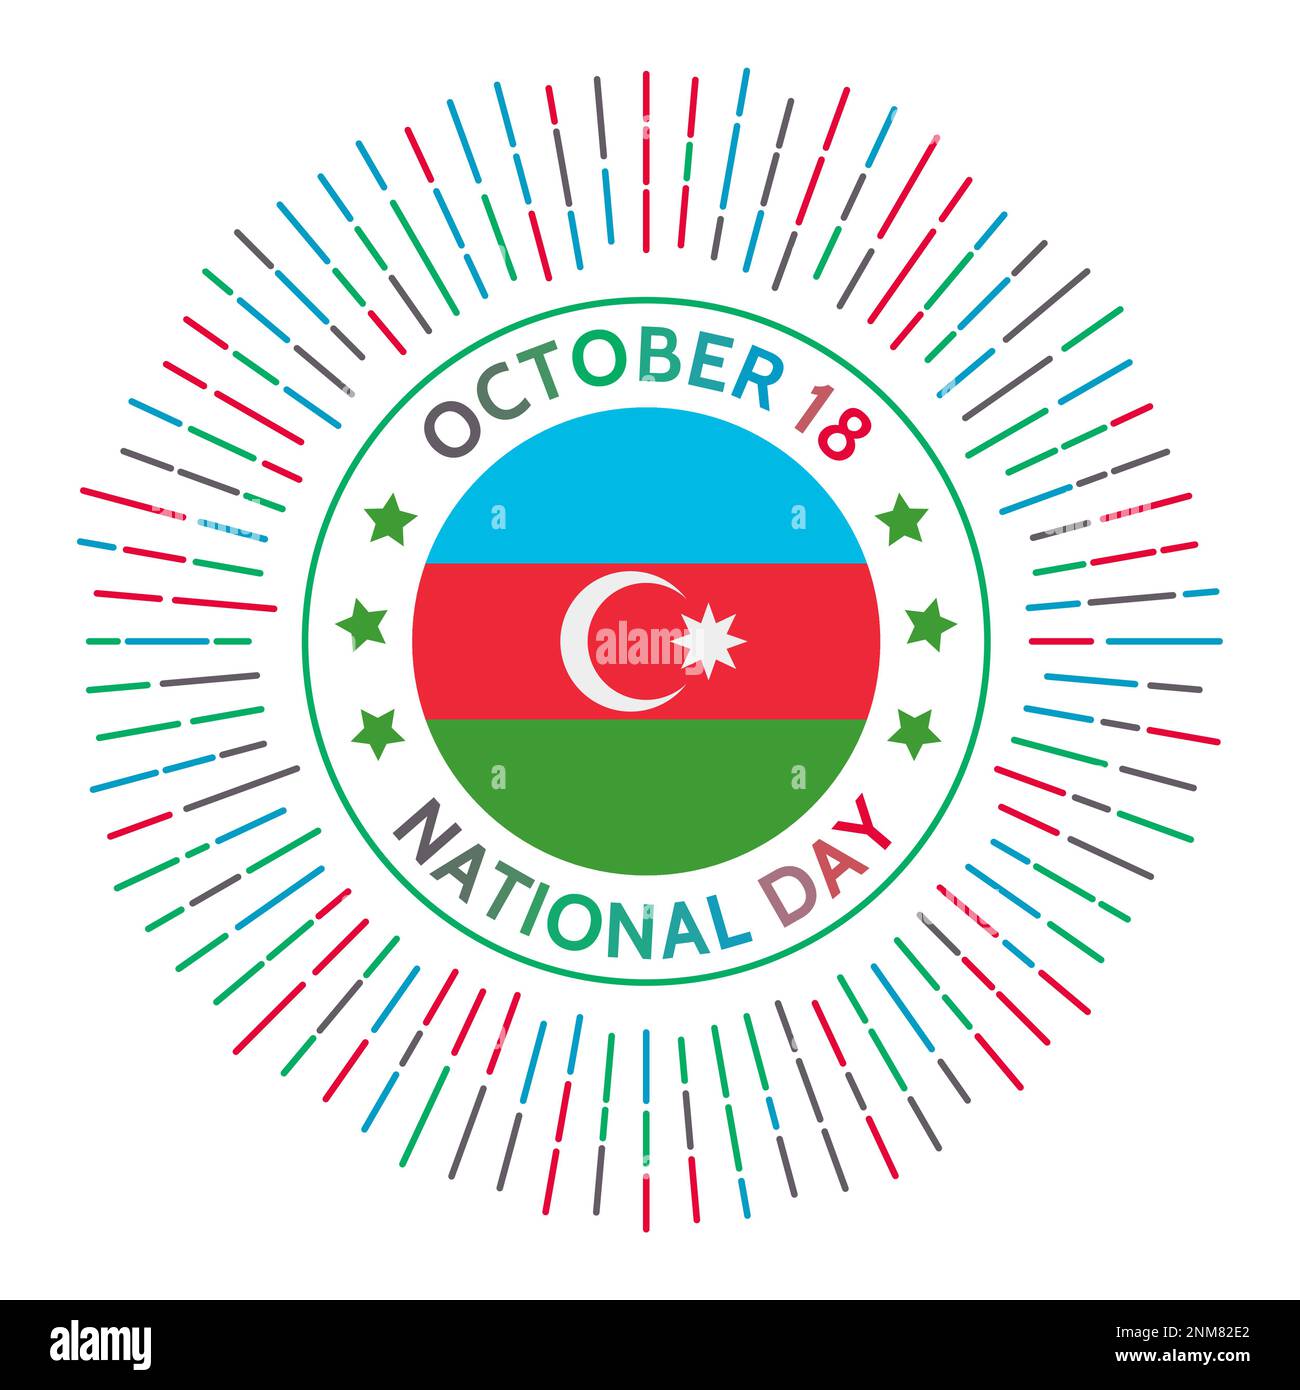 Aserbaidschan Nationalfeiertag. Die Unabhängigkeit von der Sowjetunion wurde 1991 erneut erklärt. Am 18. Oktober gefeiert. Stock Vektor